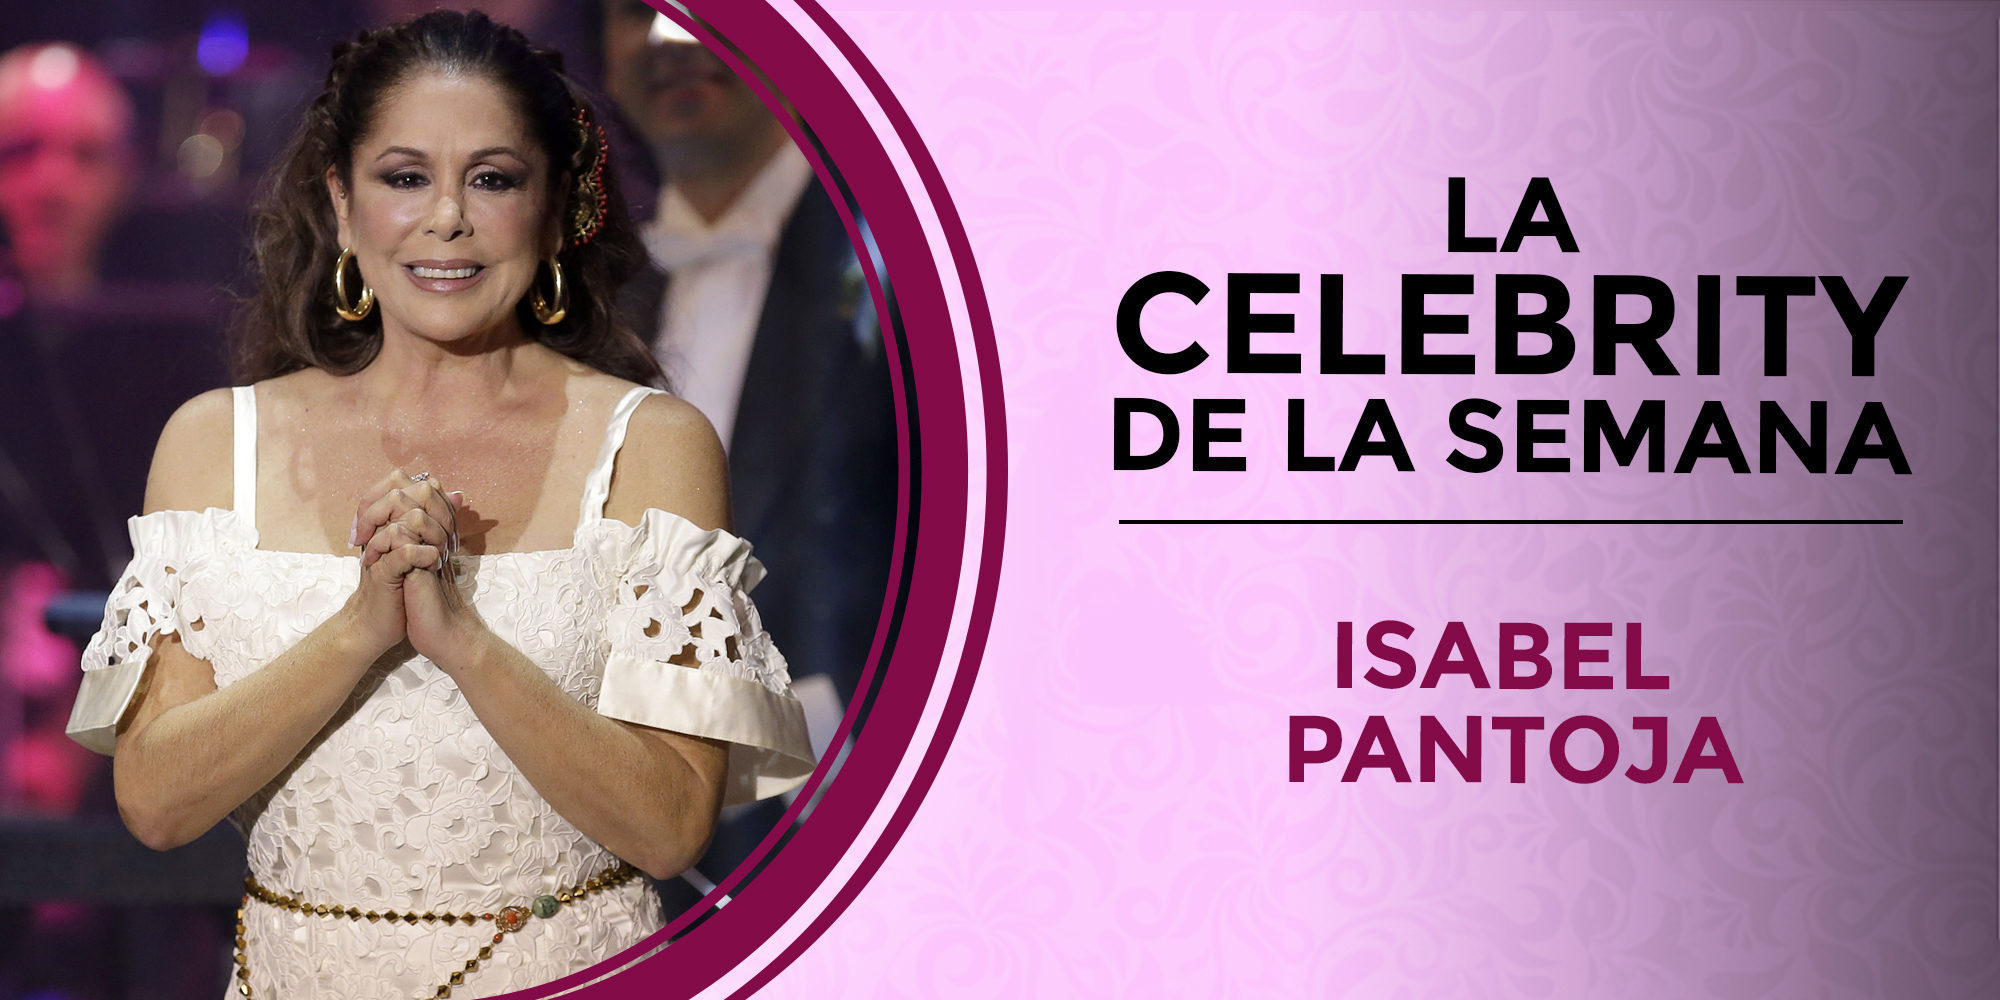 Isabel Pantoja se convierte en la celebrity de la semana por su polémica vuelta a la vida pública